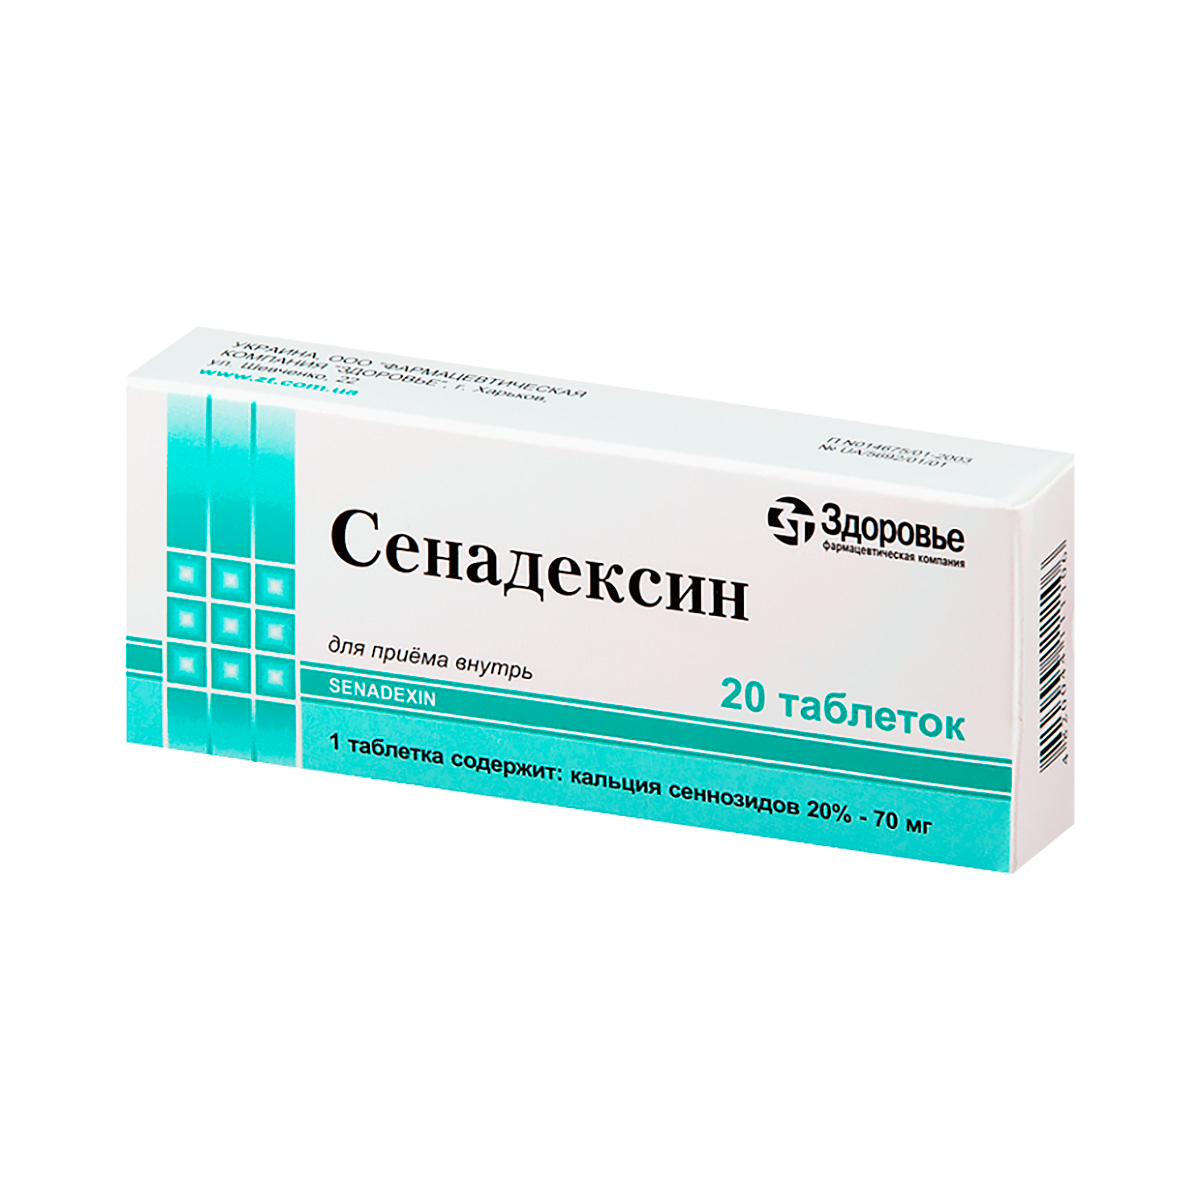 Сенадексин-Здоровье 70 мг таблетки 20 шт